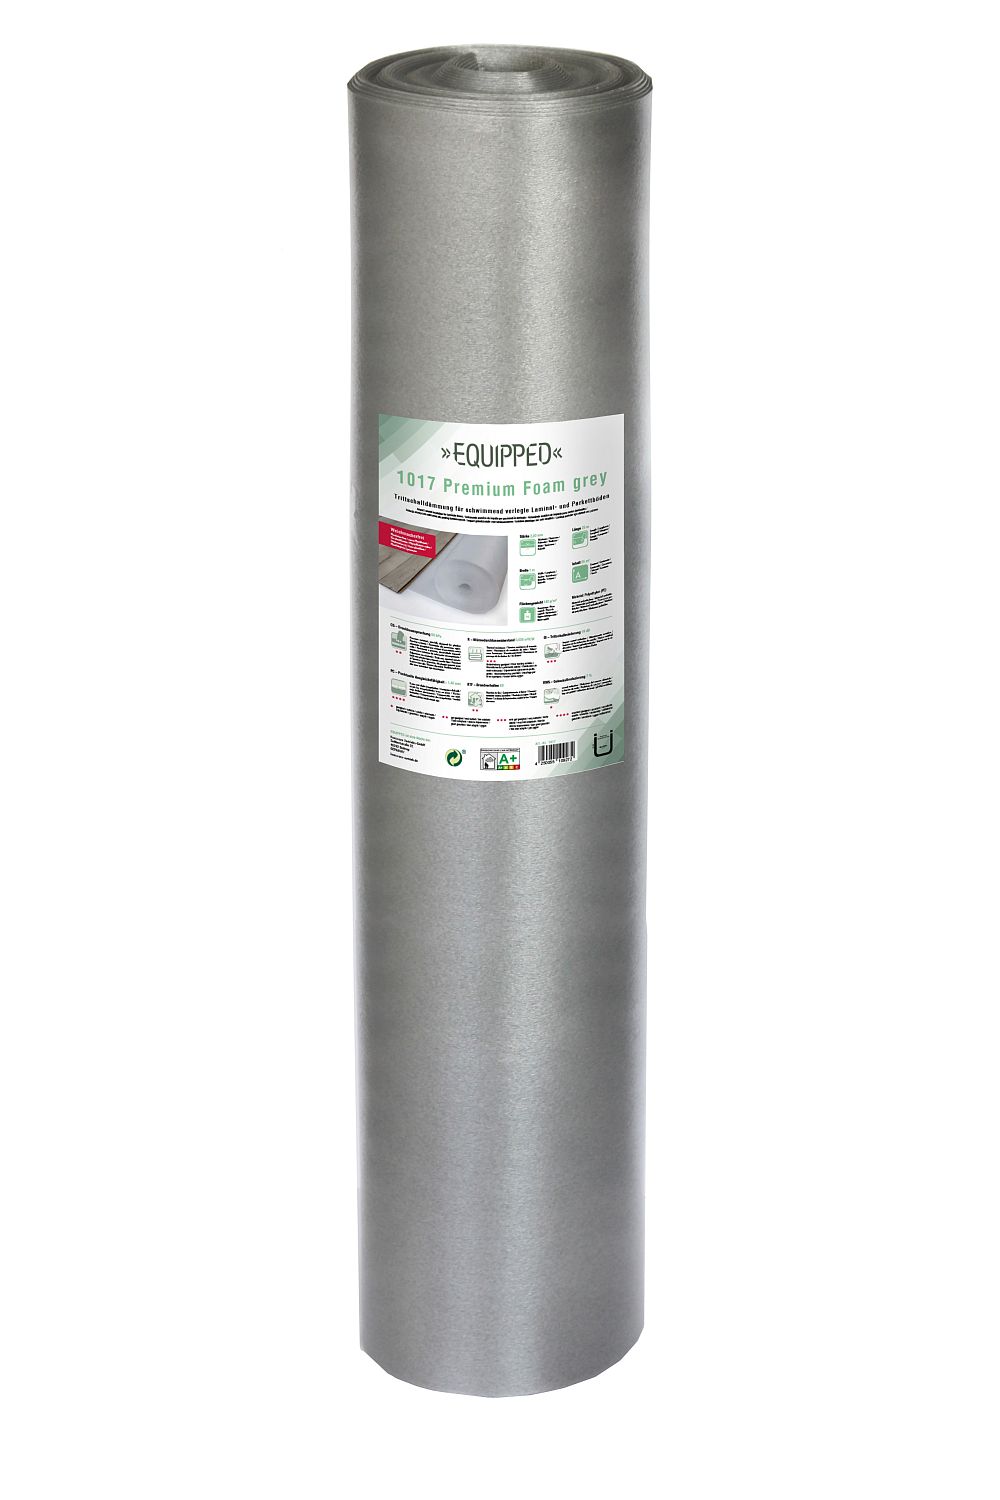 EQUIPPED 1017 Premium Foam grey - 25m²/Rolle - 2 Rollen/Beutel - Breite 1m - Unterlage / Trittschalldämmung für Laminat